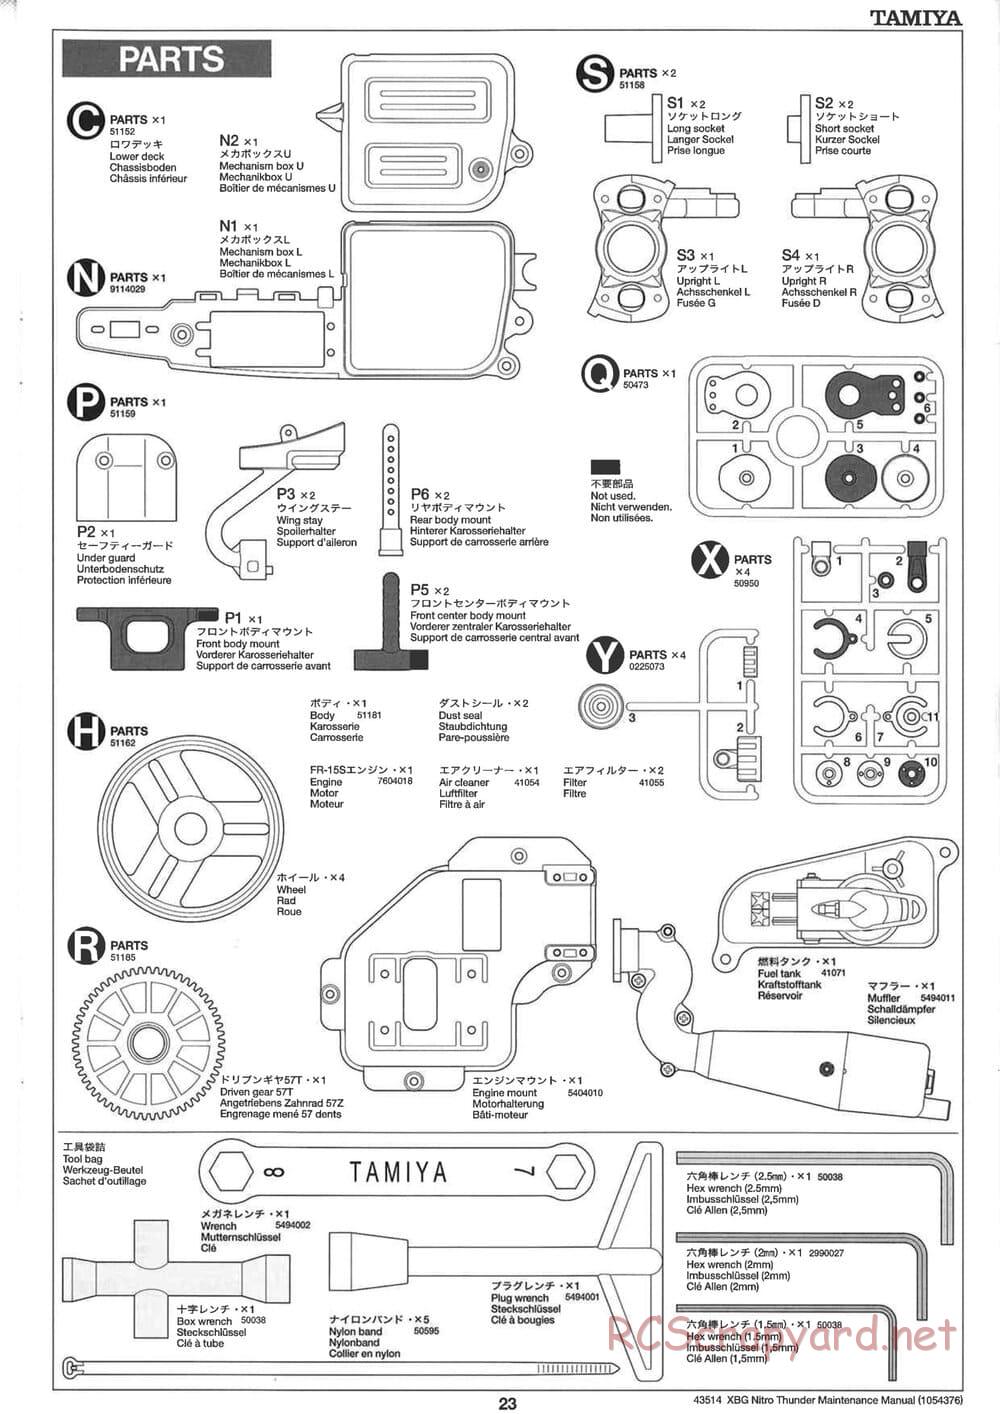 Tamiya - Nitro Thunder - NDF-01 Chassis - Manual - Page 23